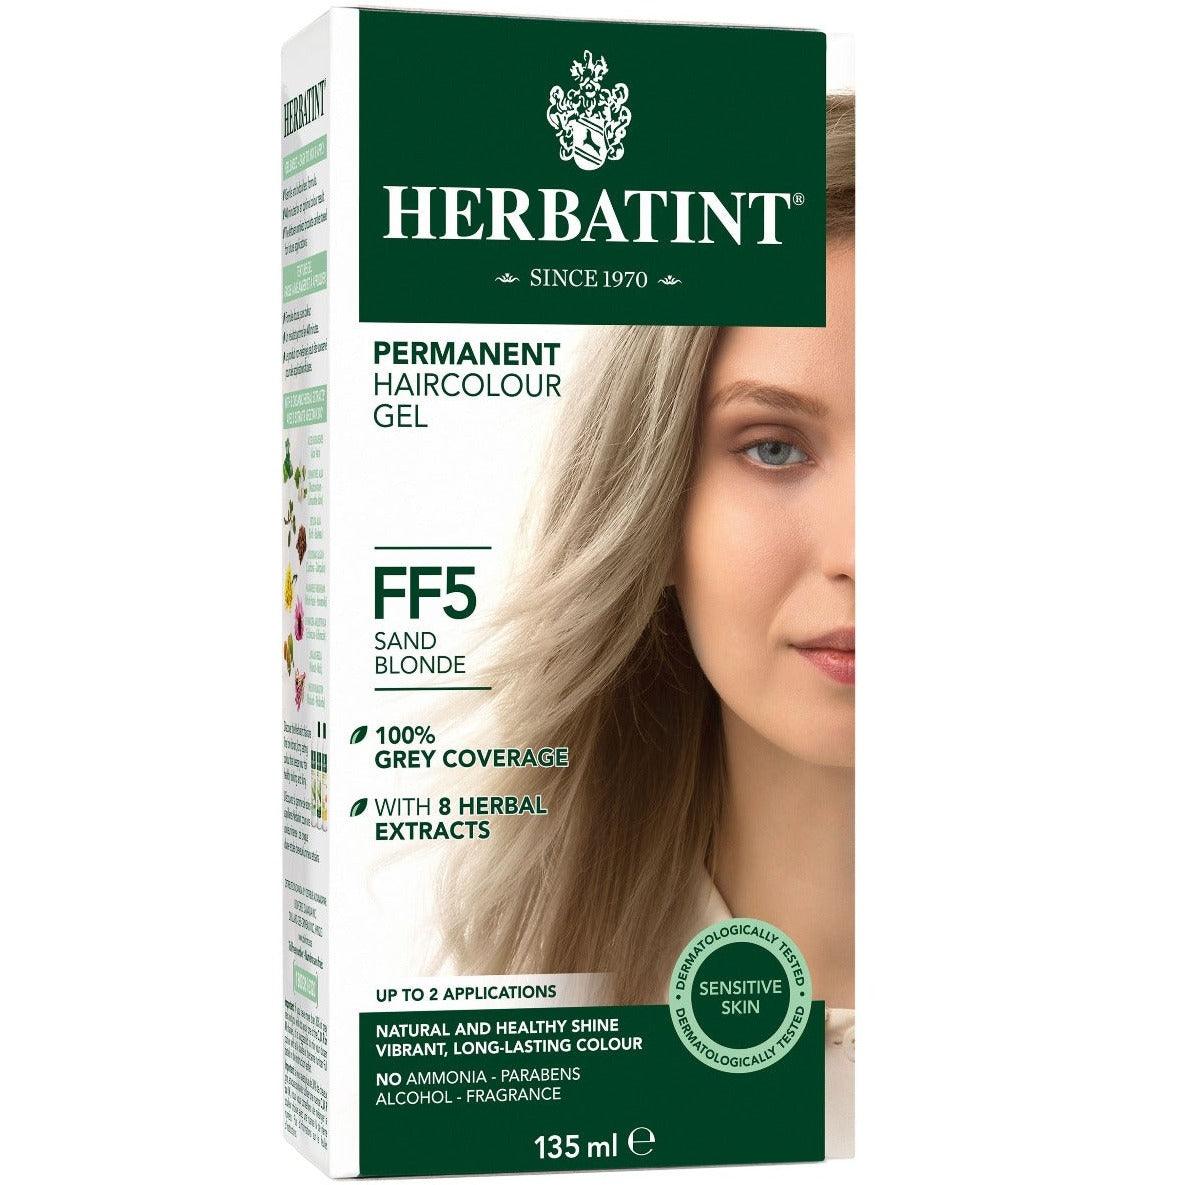 Herbatint Permanent Hair Colour Gel Sand Blonde FF5 135mL Hair Colour at Village Vitamin Store